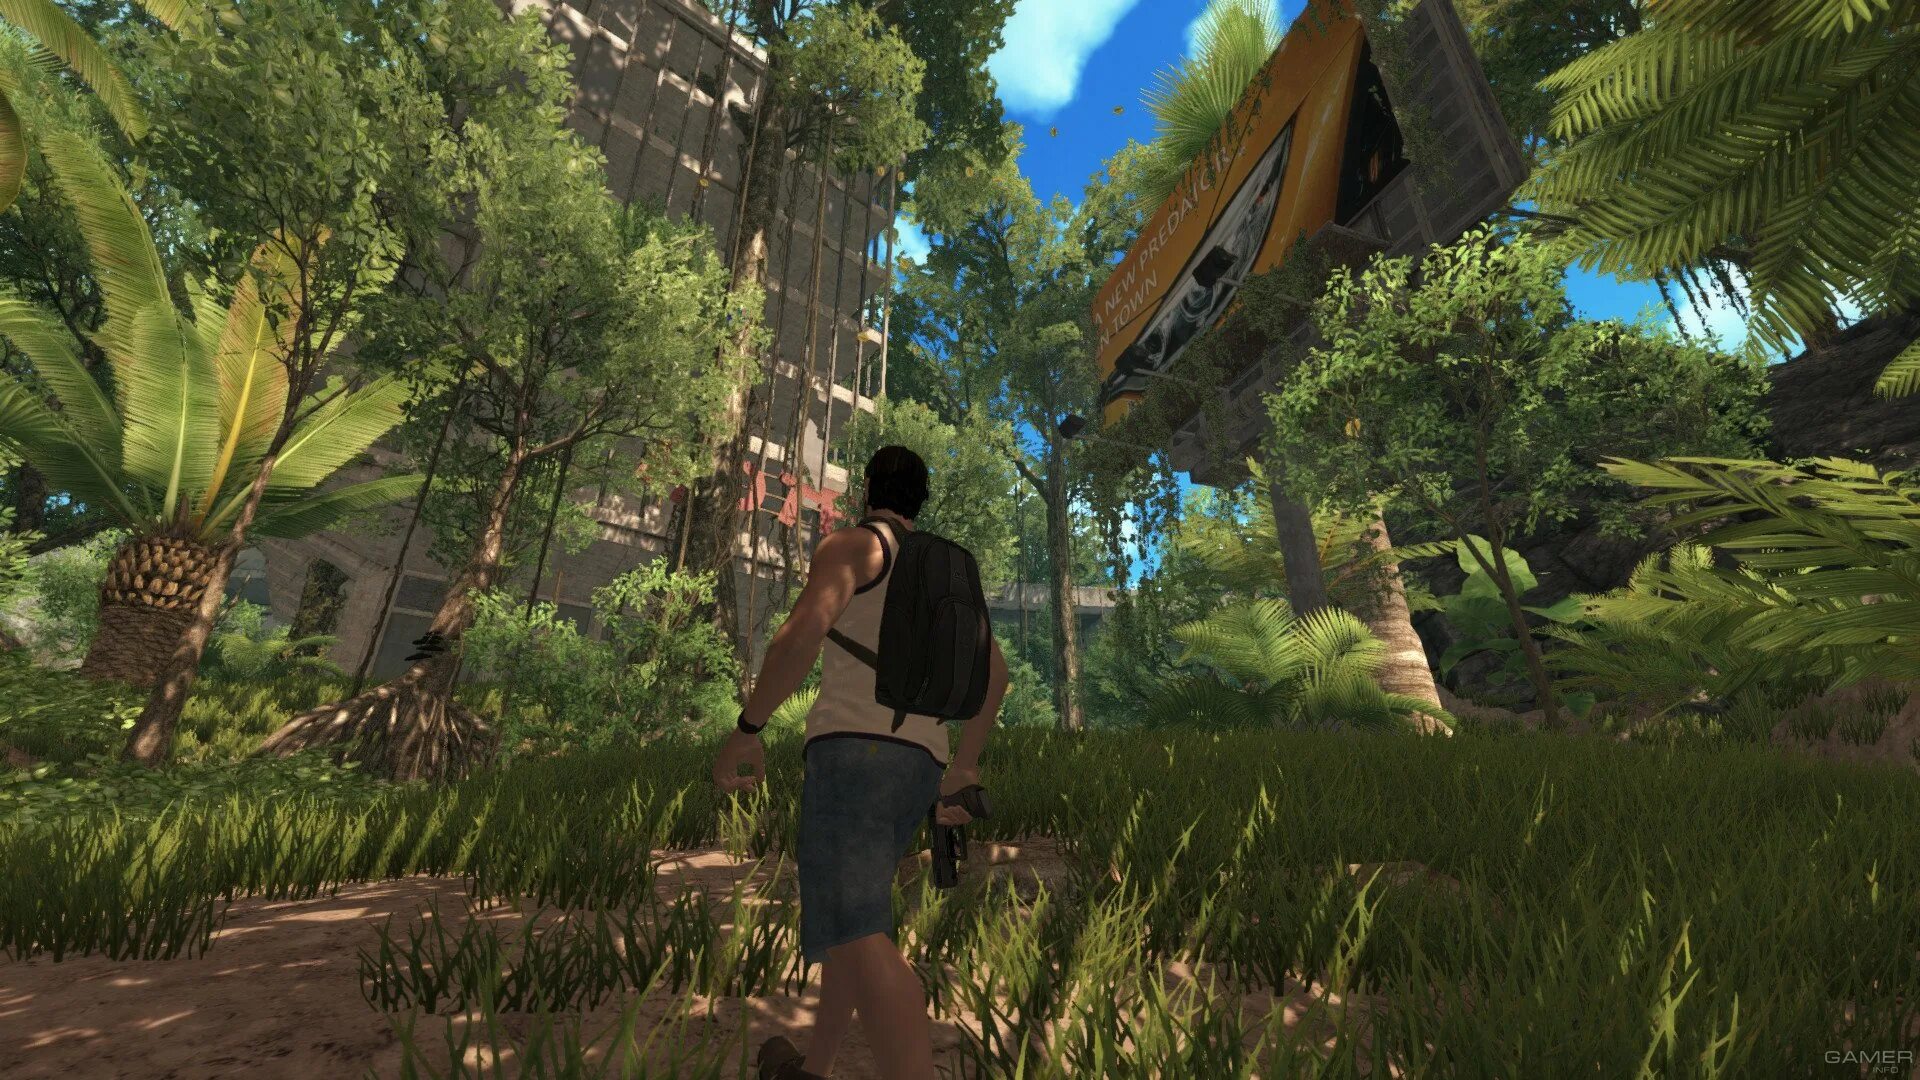 Игра на выживания 6. Dinosis Survival. Скриншоты игр про выживания. Игра для ПК на выживания 2017.